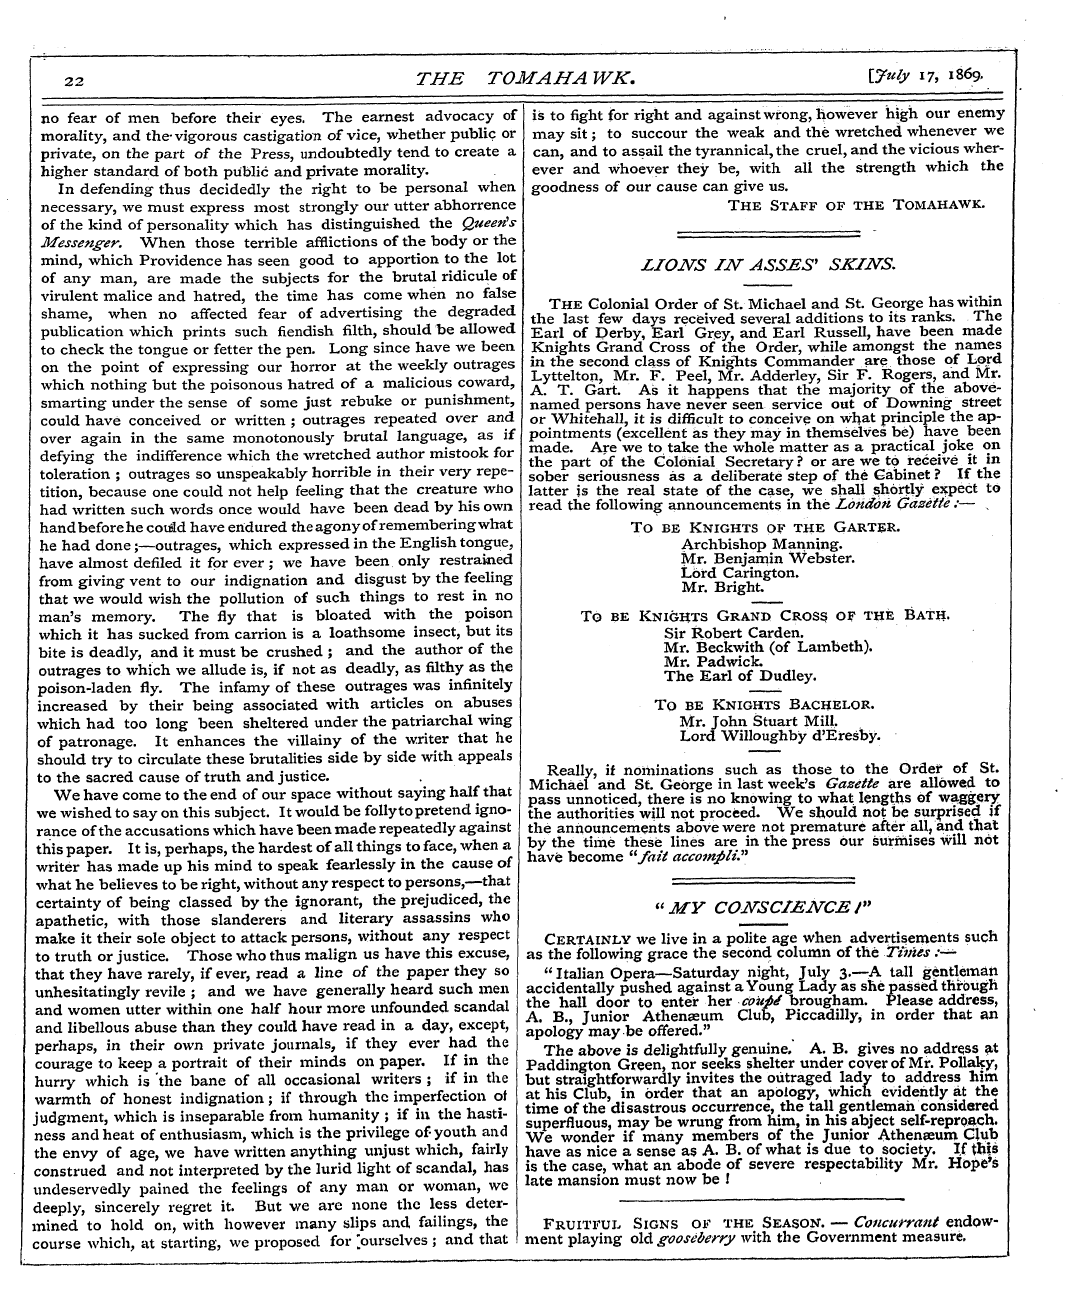 Tomahawk (1867-1870): jS F Y, 1st edition - Liojsts Hsr Asses 1 Skins.